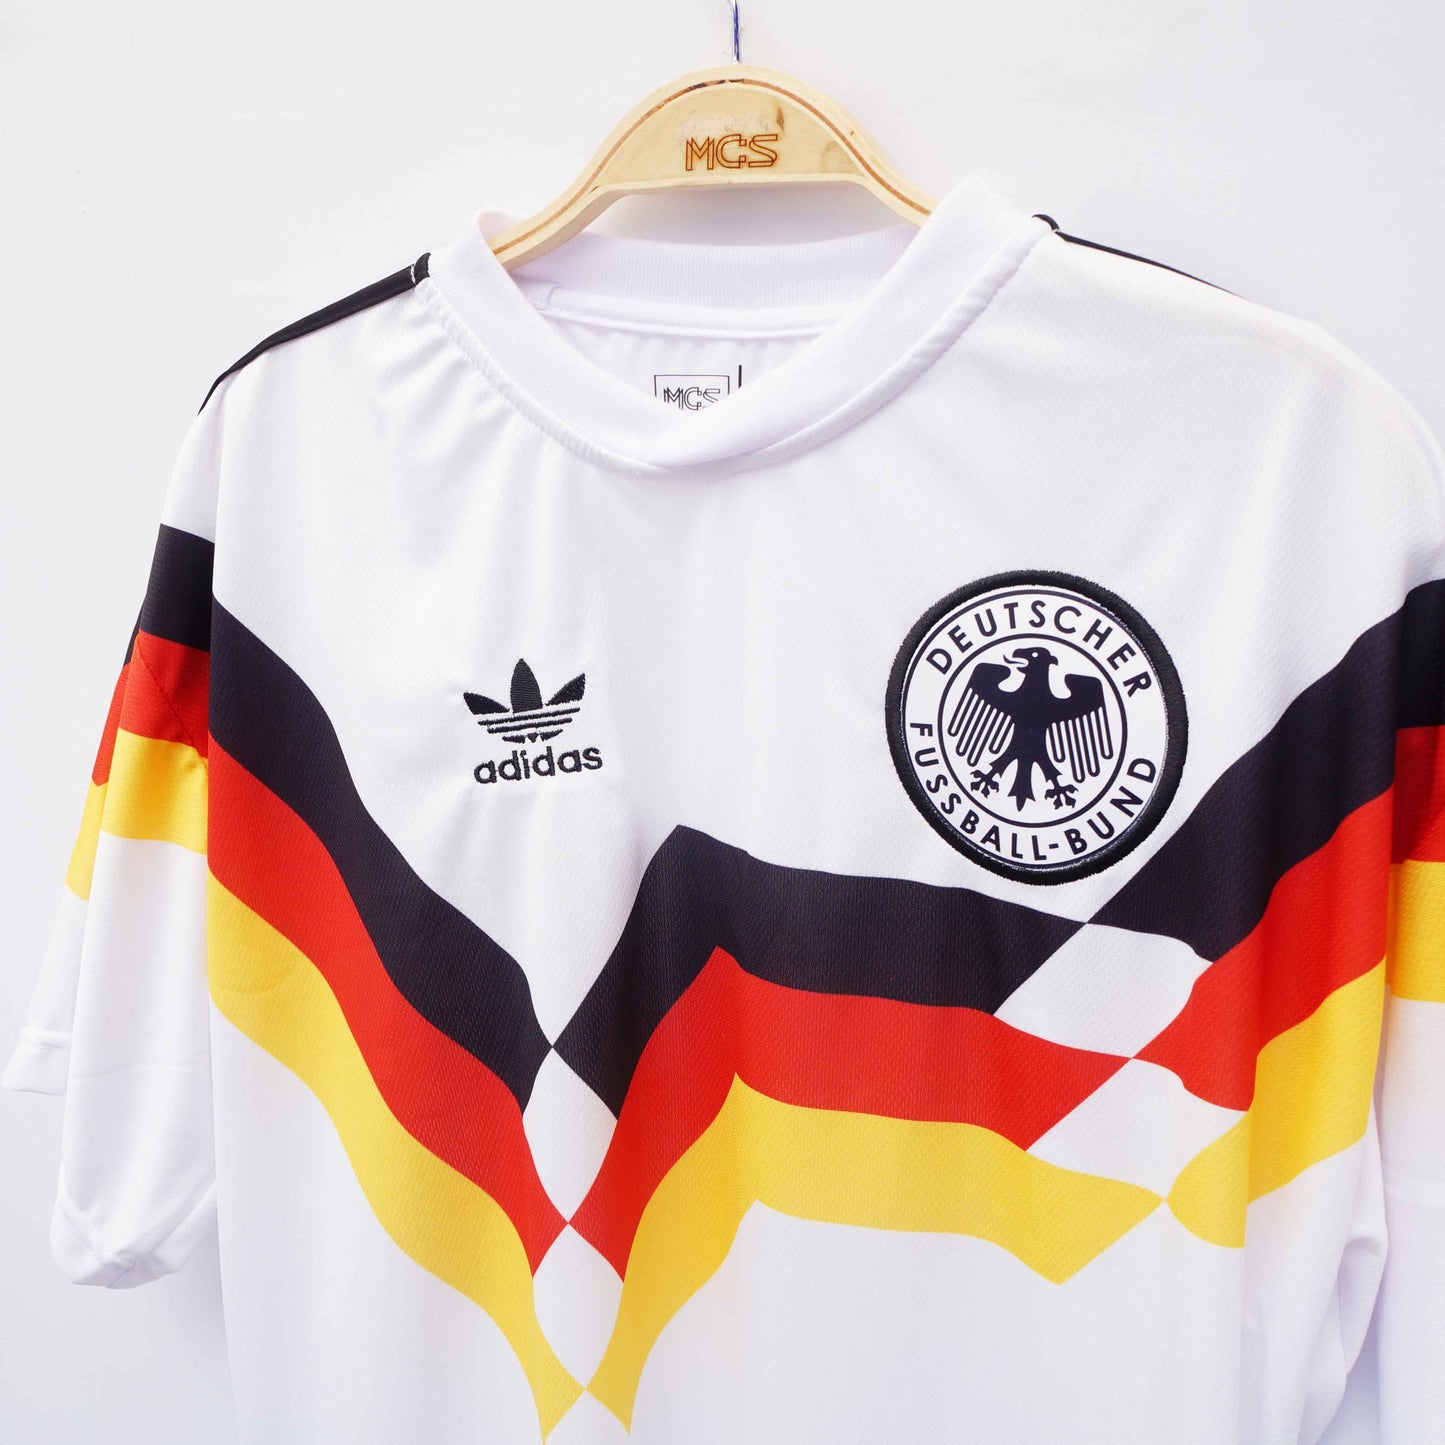 Camiseta Alemania Camisetas de fútbol | Amigos MCS – AmigosMCS